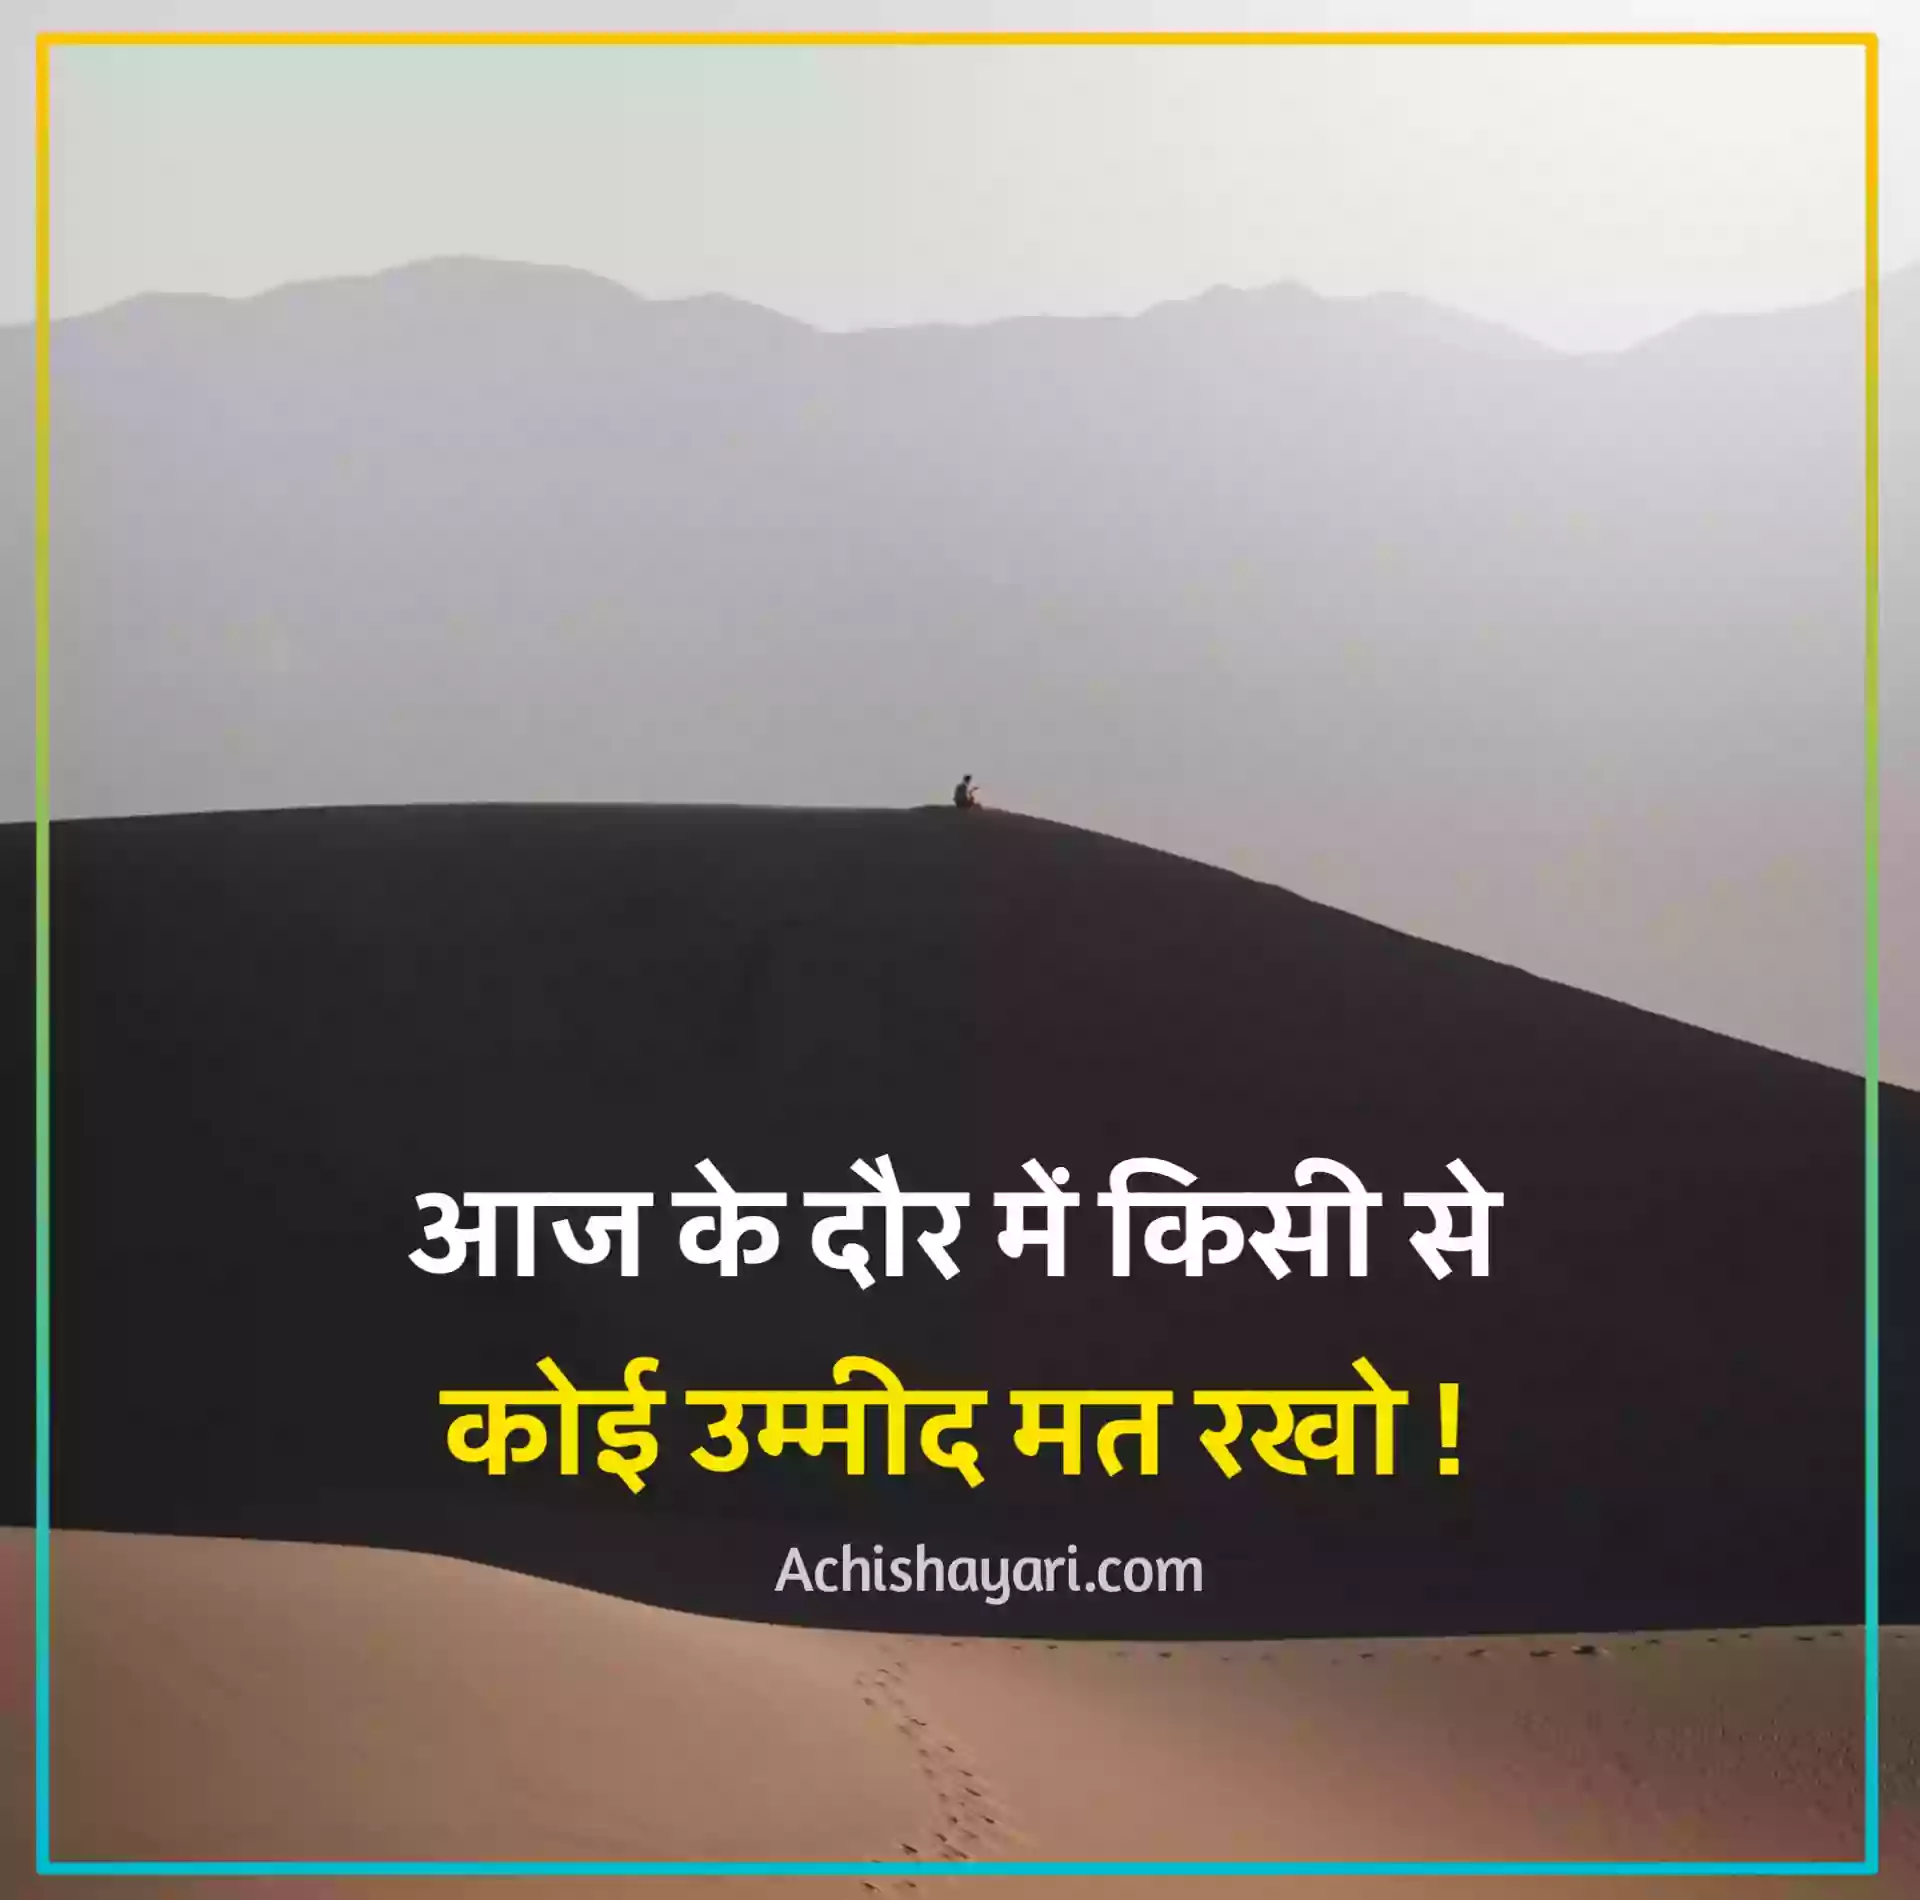 Kisi Ke Liye Kitna Bhi Karo Quotes in Hindi Image